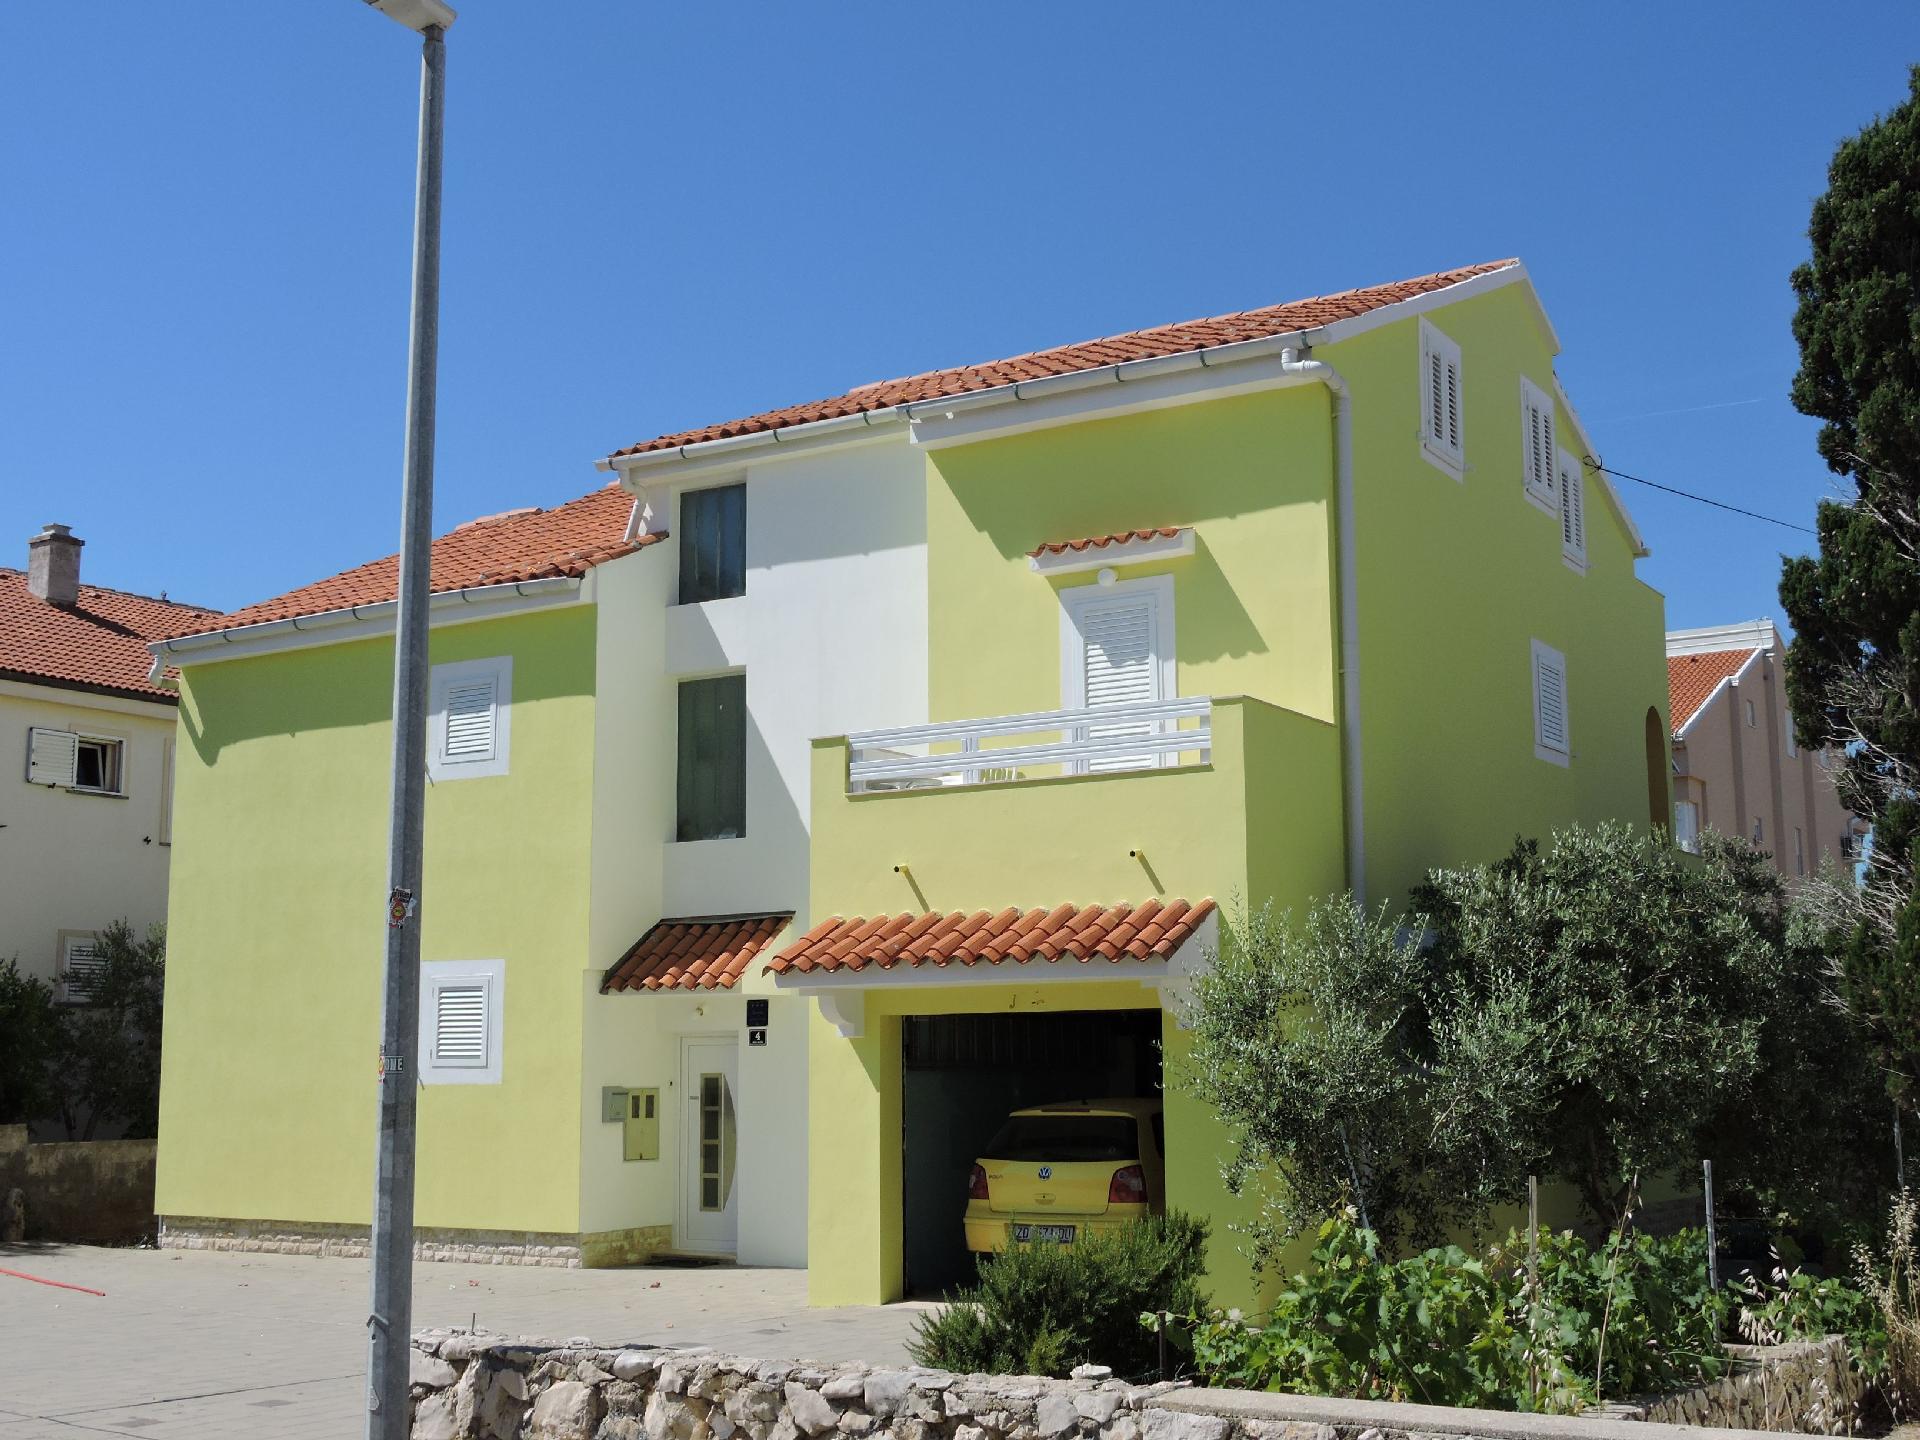 Ferienhaus für 6 Personen ca. 56 m² in N Ferienwohnung  kroatische Inseln